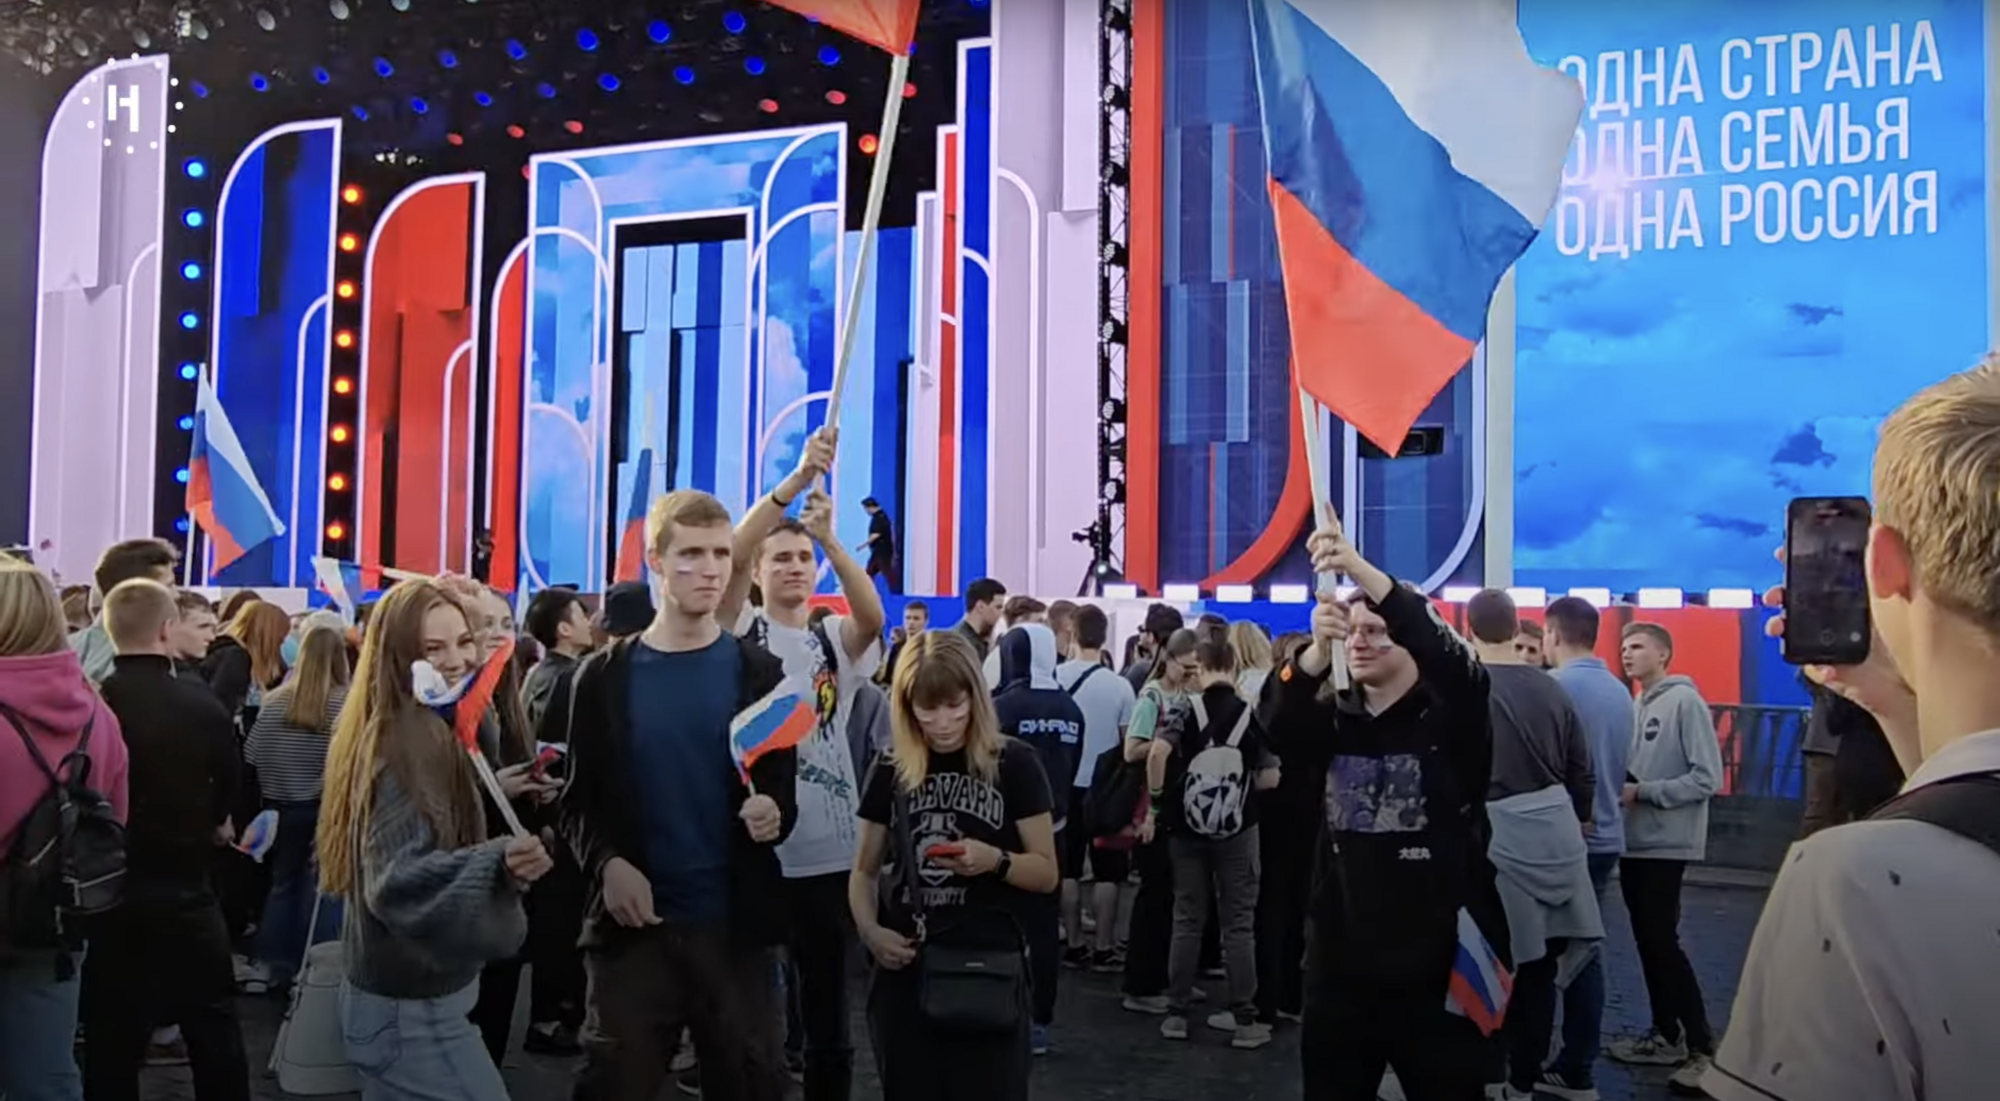 В Москве прошел "шабаш" по случаю оккупации украинских регионов: Путин "кинул" россиян, а на ТВ его проигнорировали